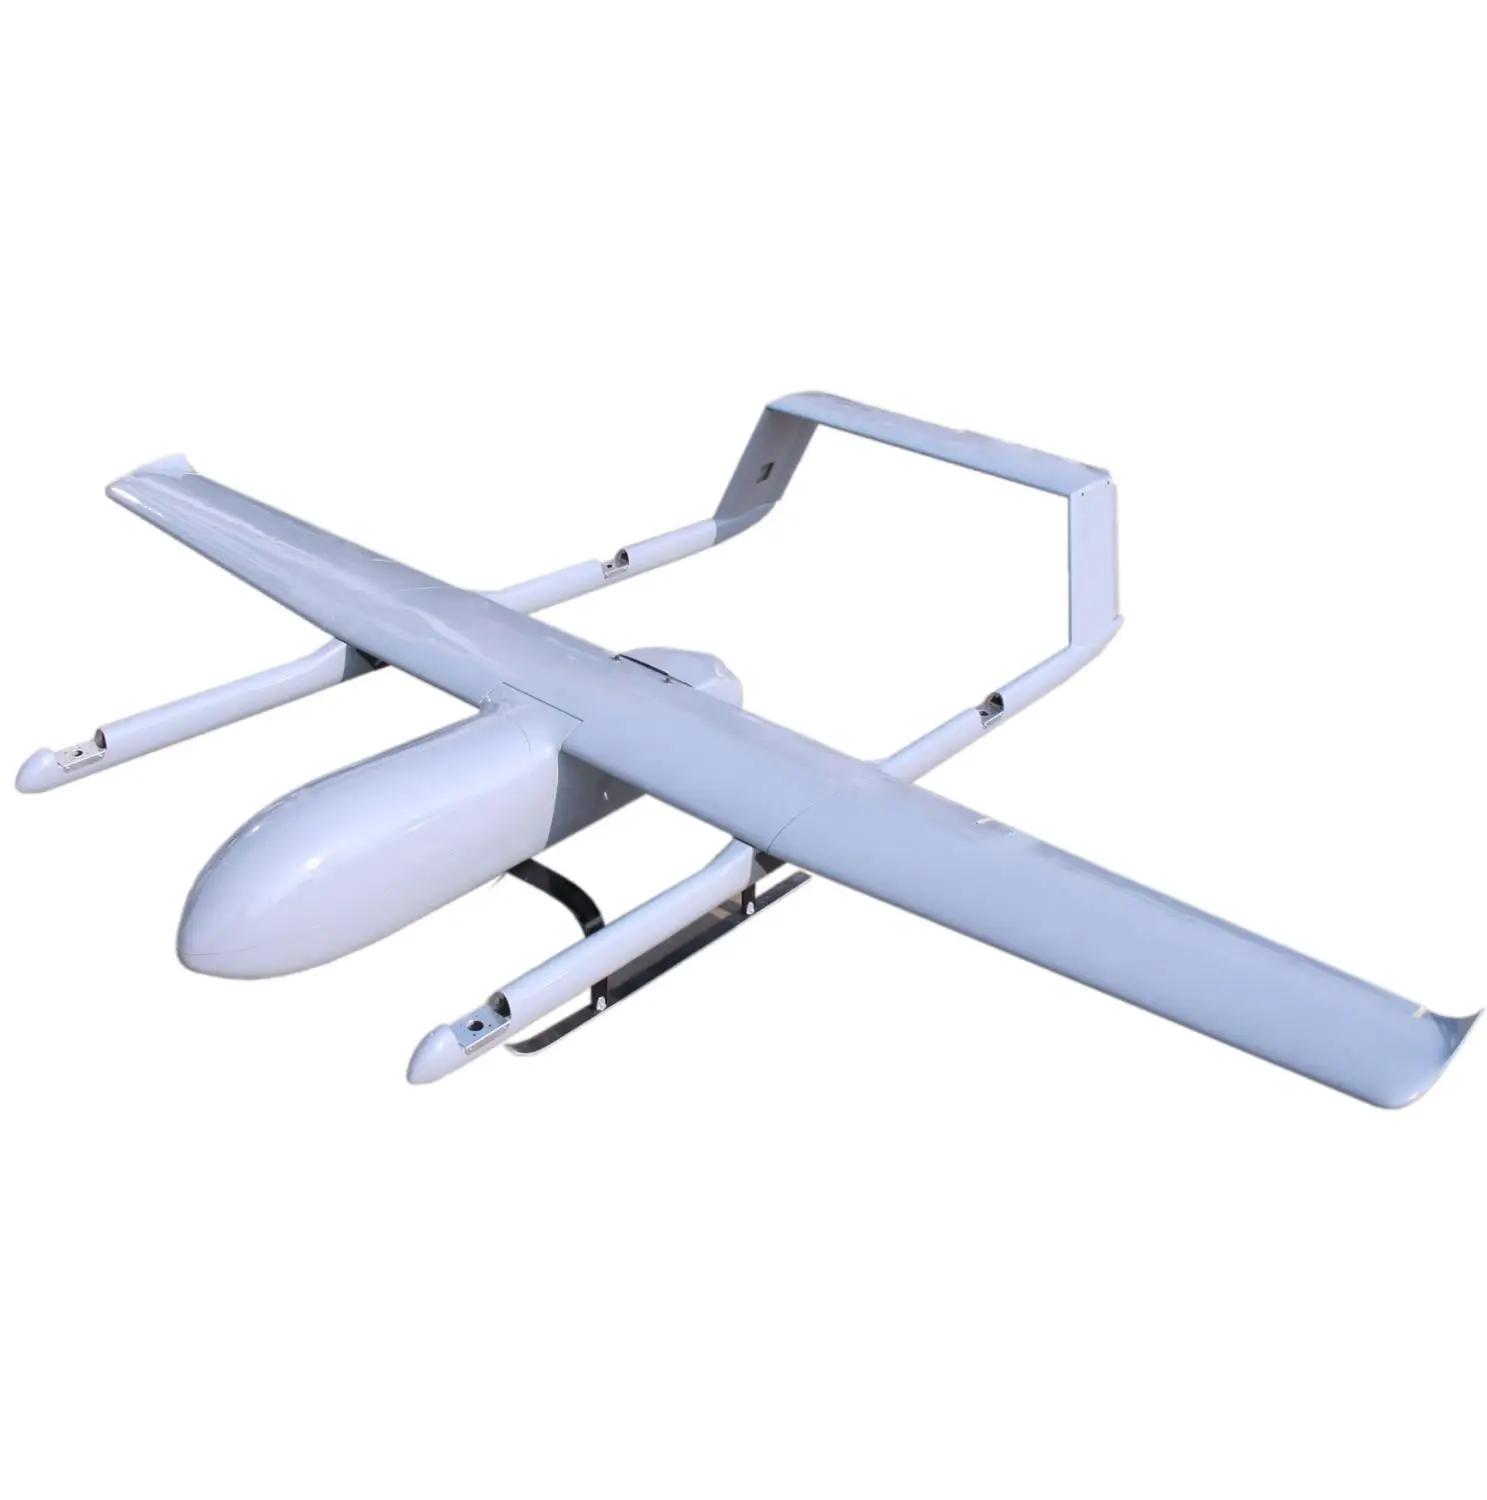 Mugin-3 VTOL Fiberglass UAV 3600mm Kit